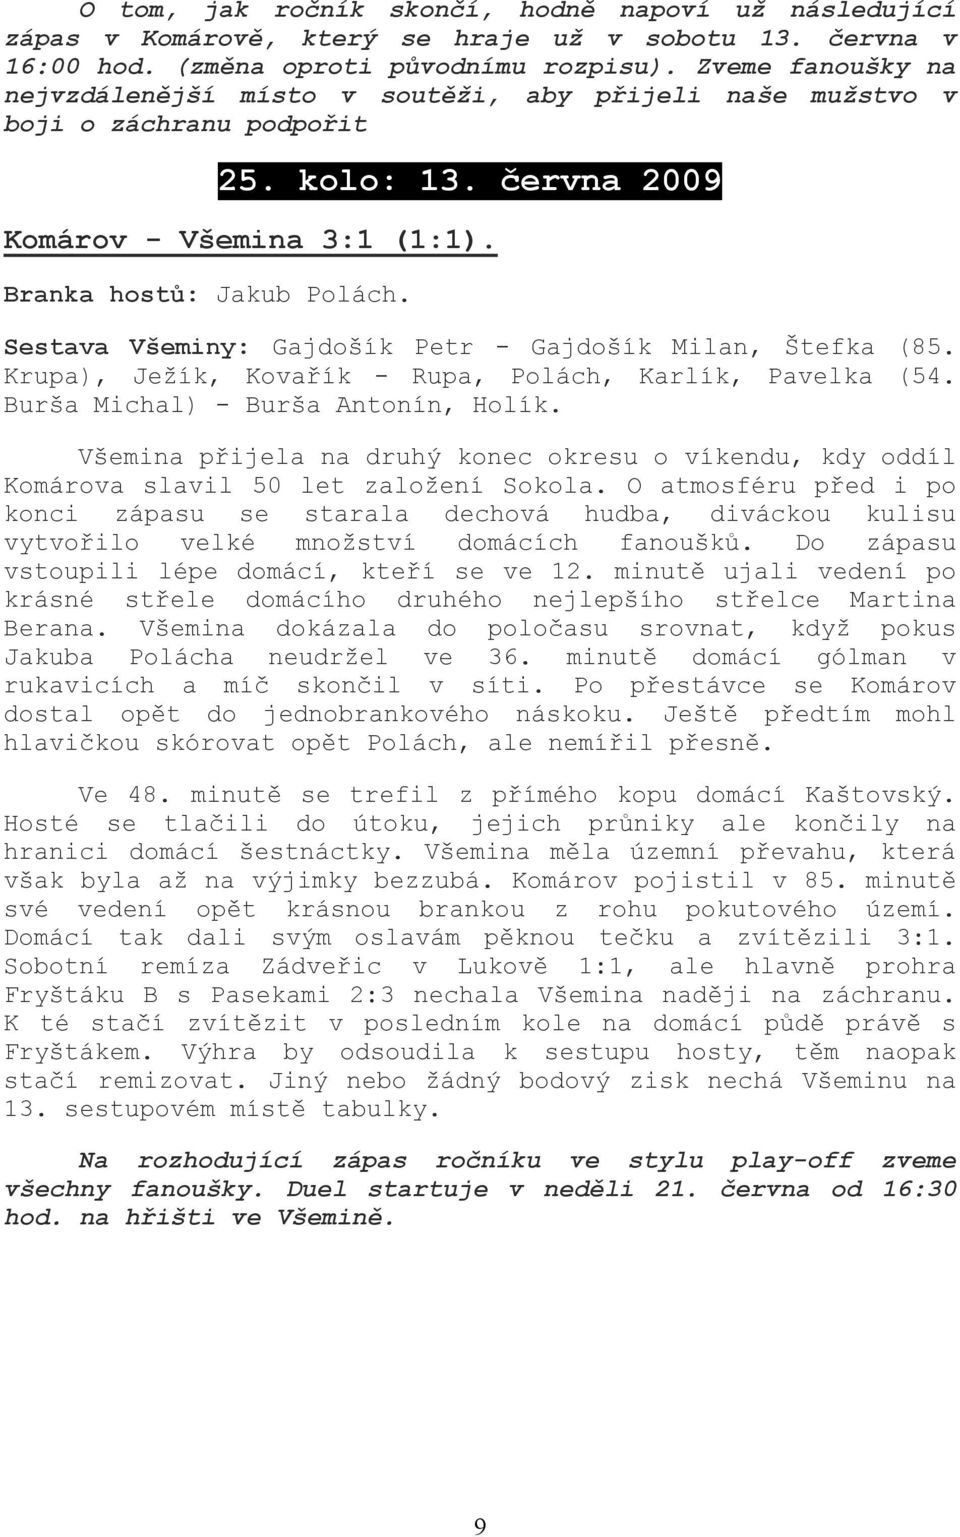 Sestava Všeminy: Gajdošík Petr - Gajdošík Milan, Štefka (85. Krupa), Ježík, Kovařík - Rupa, Polách, Karlík, Pavelka (54. Burša Michal) - Burša Antonín, Holík.